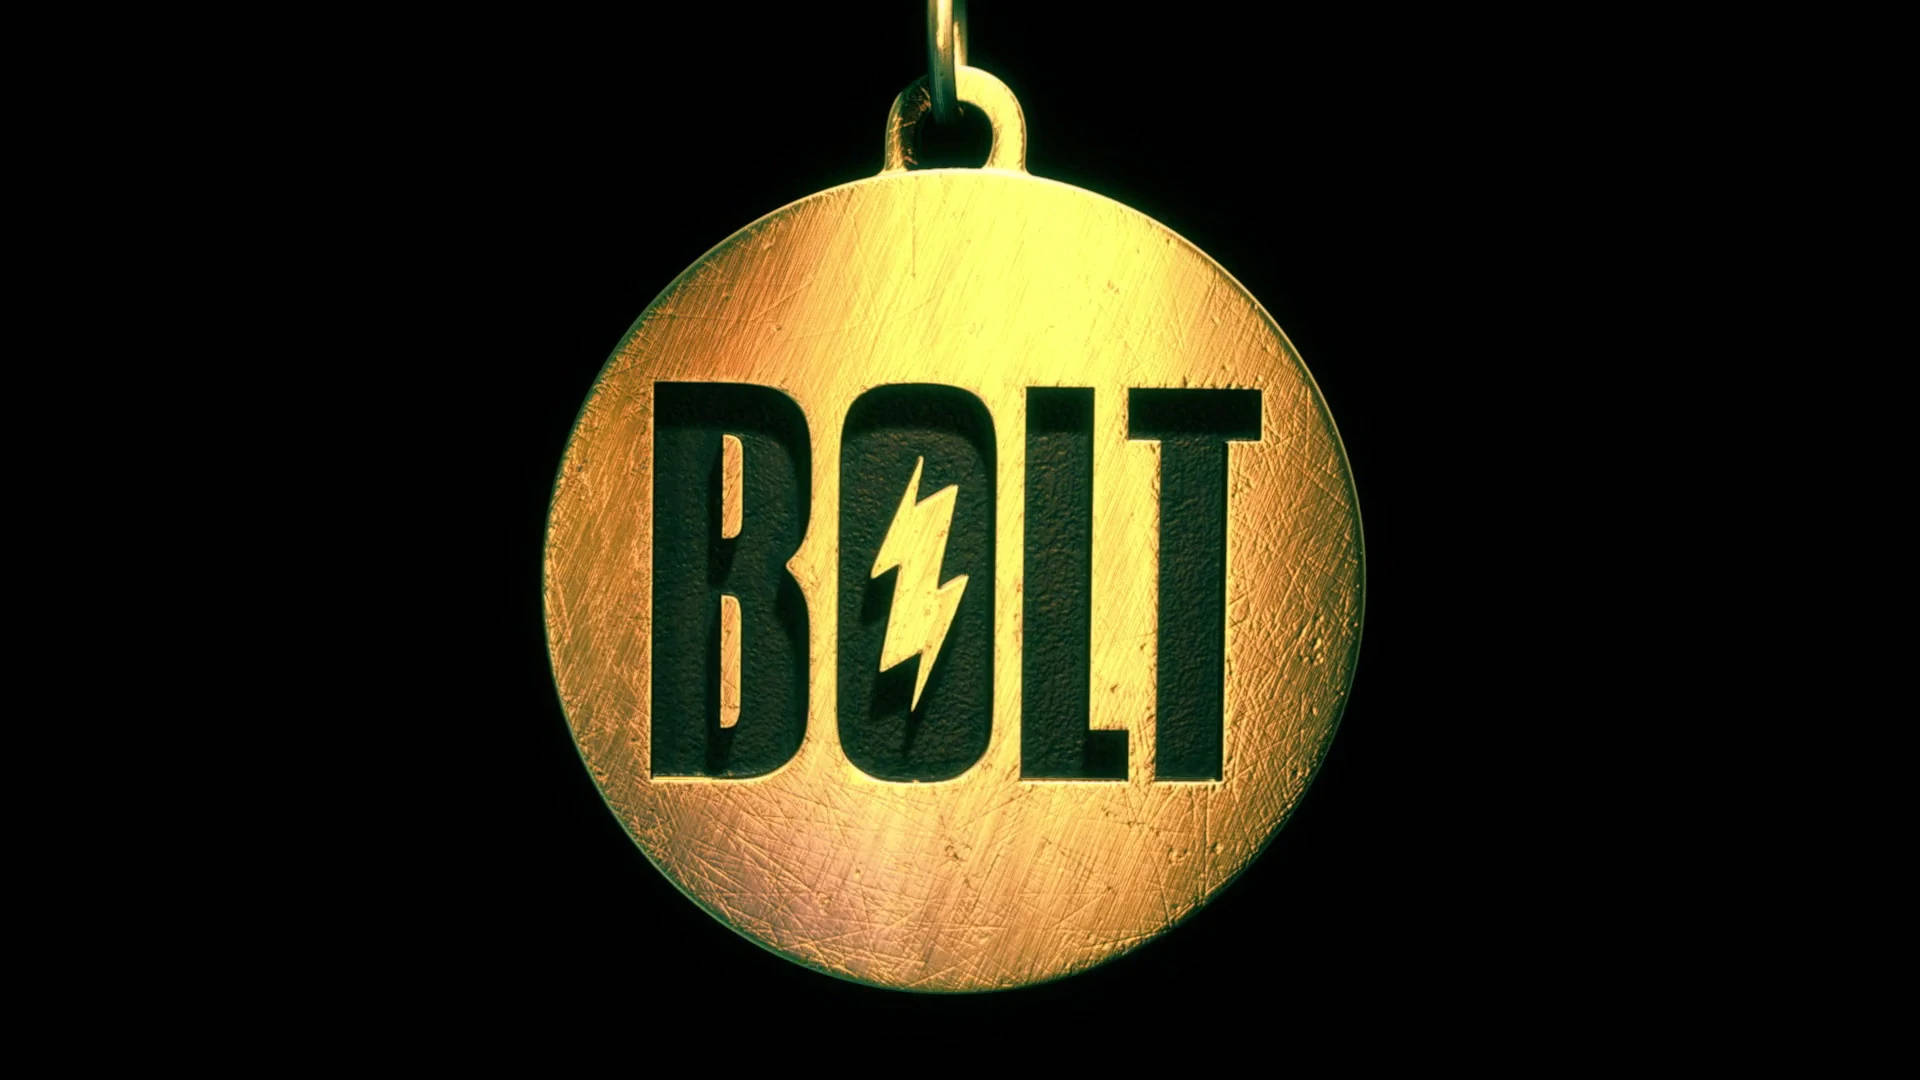 Bolt Gold Medal In Black Background